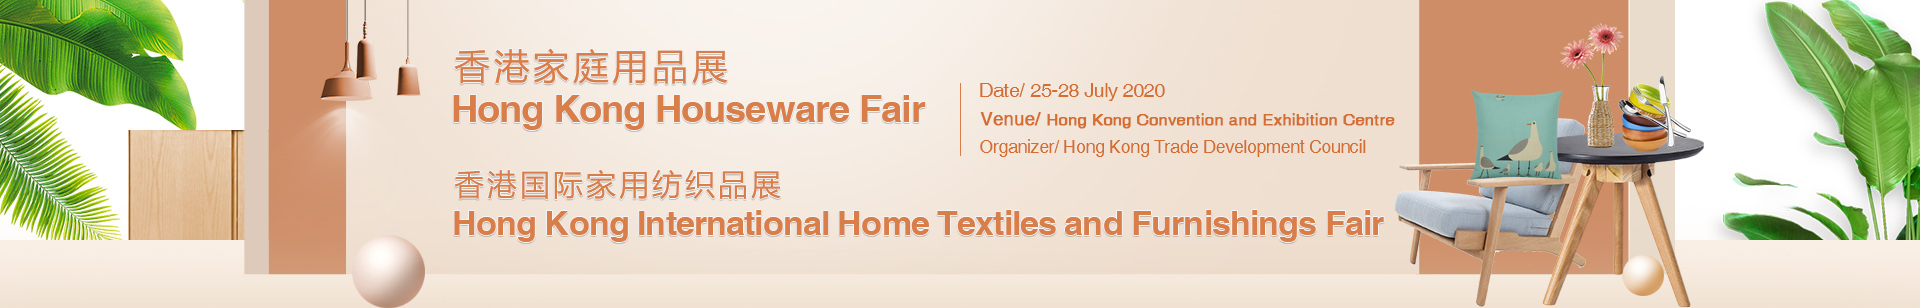 HK Houseware Fair & HK int'l Home Textiles and Furnishings Fair